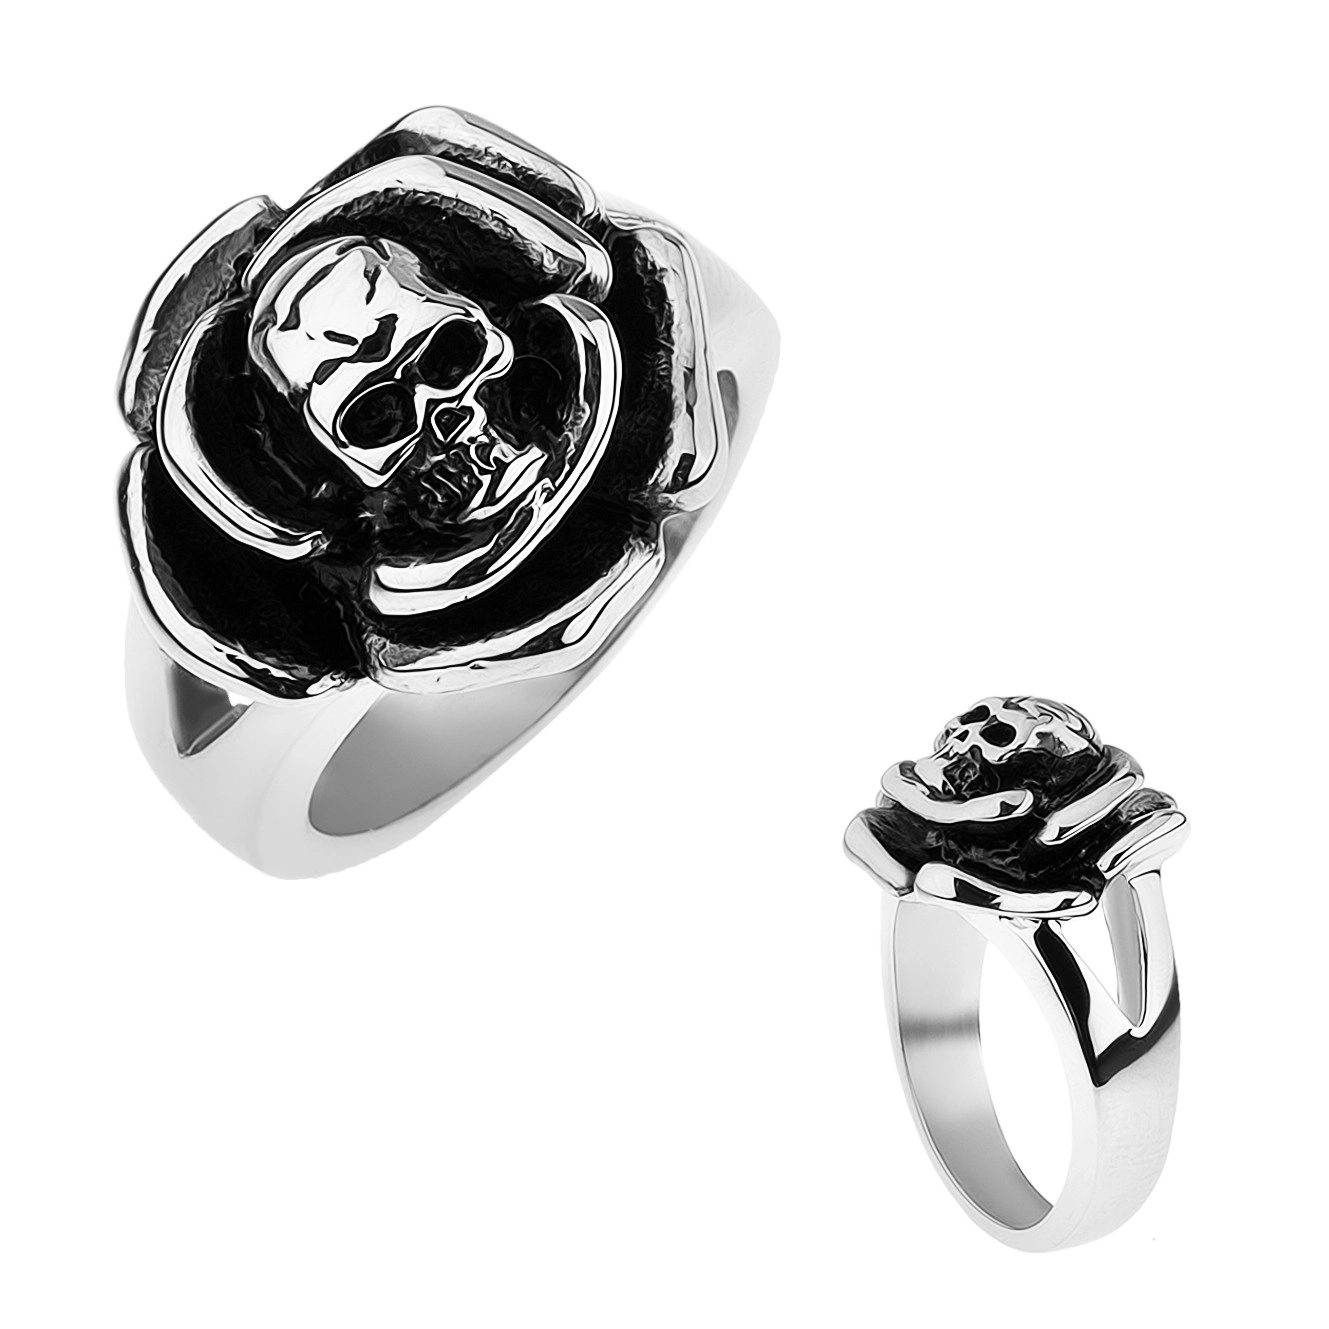 Patinovaný ocelový prsten, růže s lebkou uprostřed, rozdvojená ramena - Velikost: 69